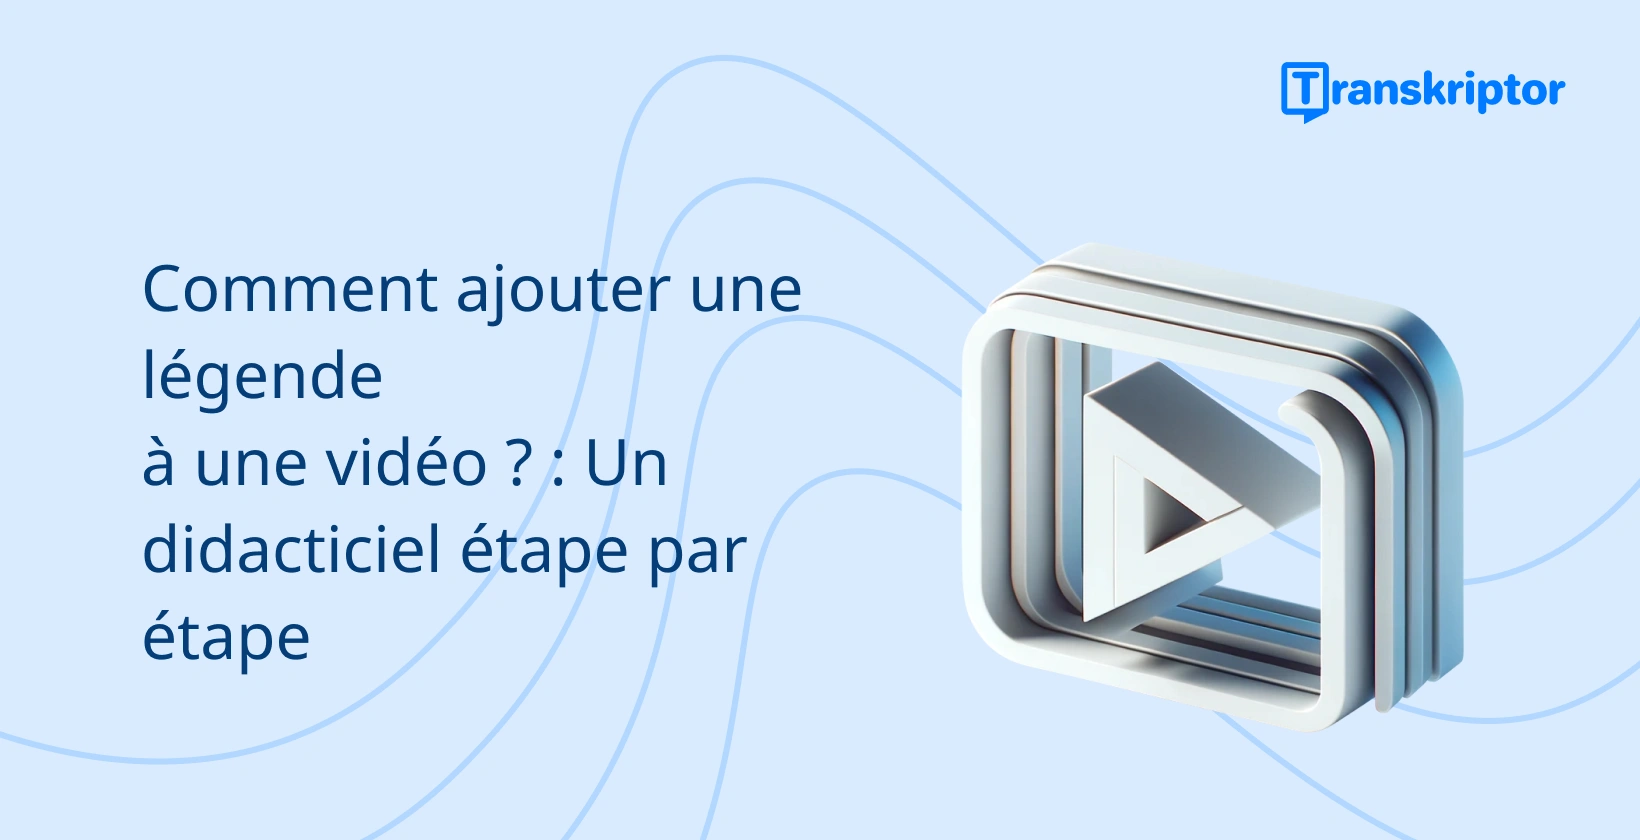 Bannière de tutoriel étape par étape sur l’ajout de sous-titres aux vidéos, avec une icône de bouton de lecture symbolisant le montage vidéo.